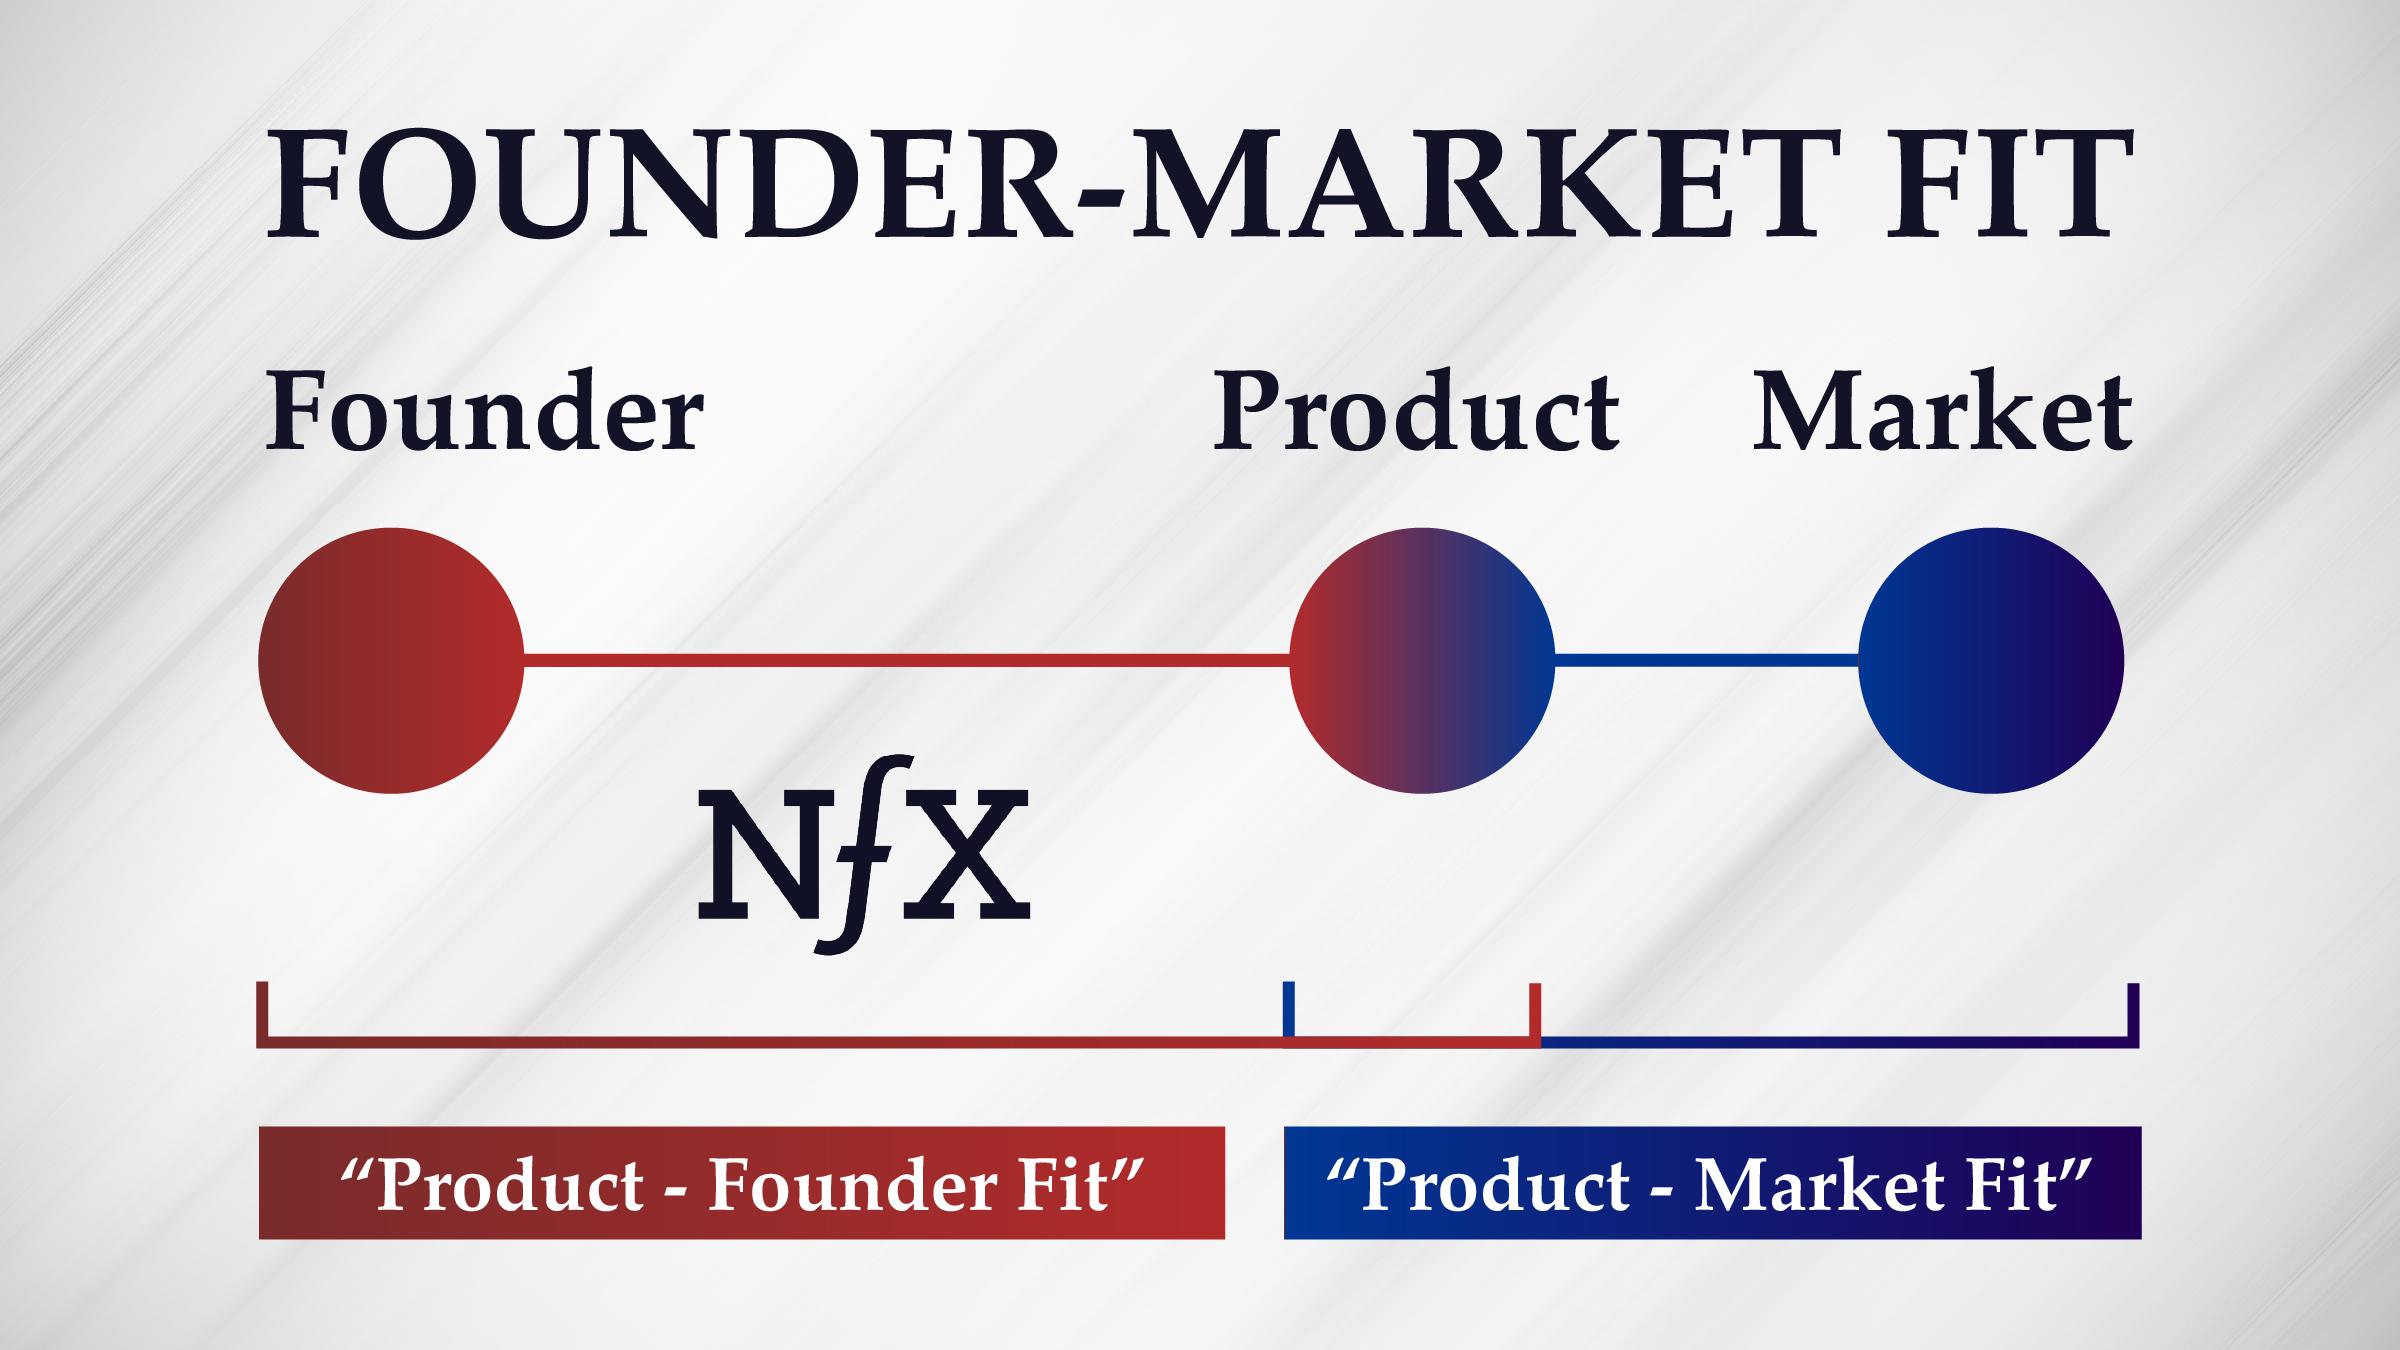 Founder-Market Fit